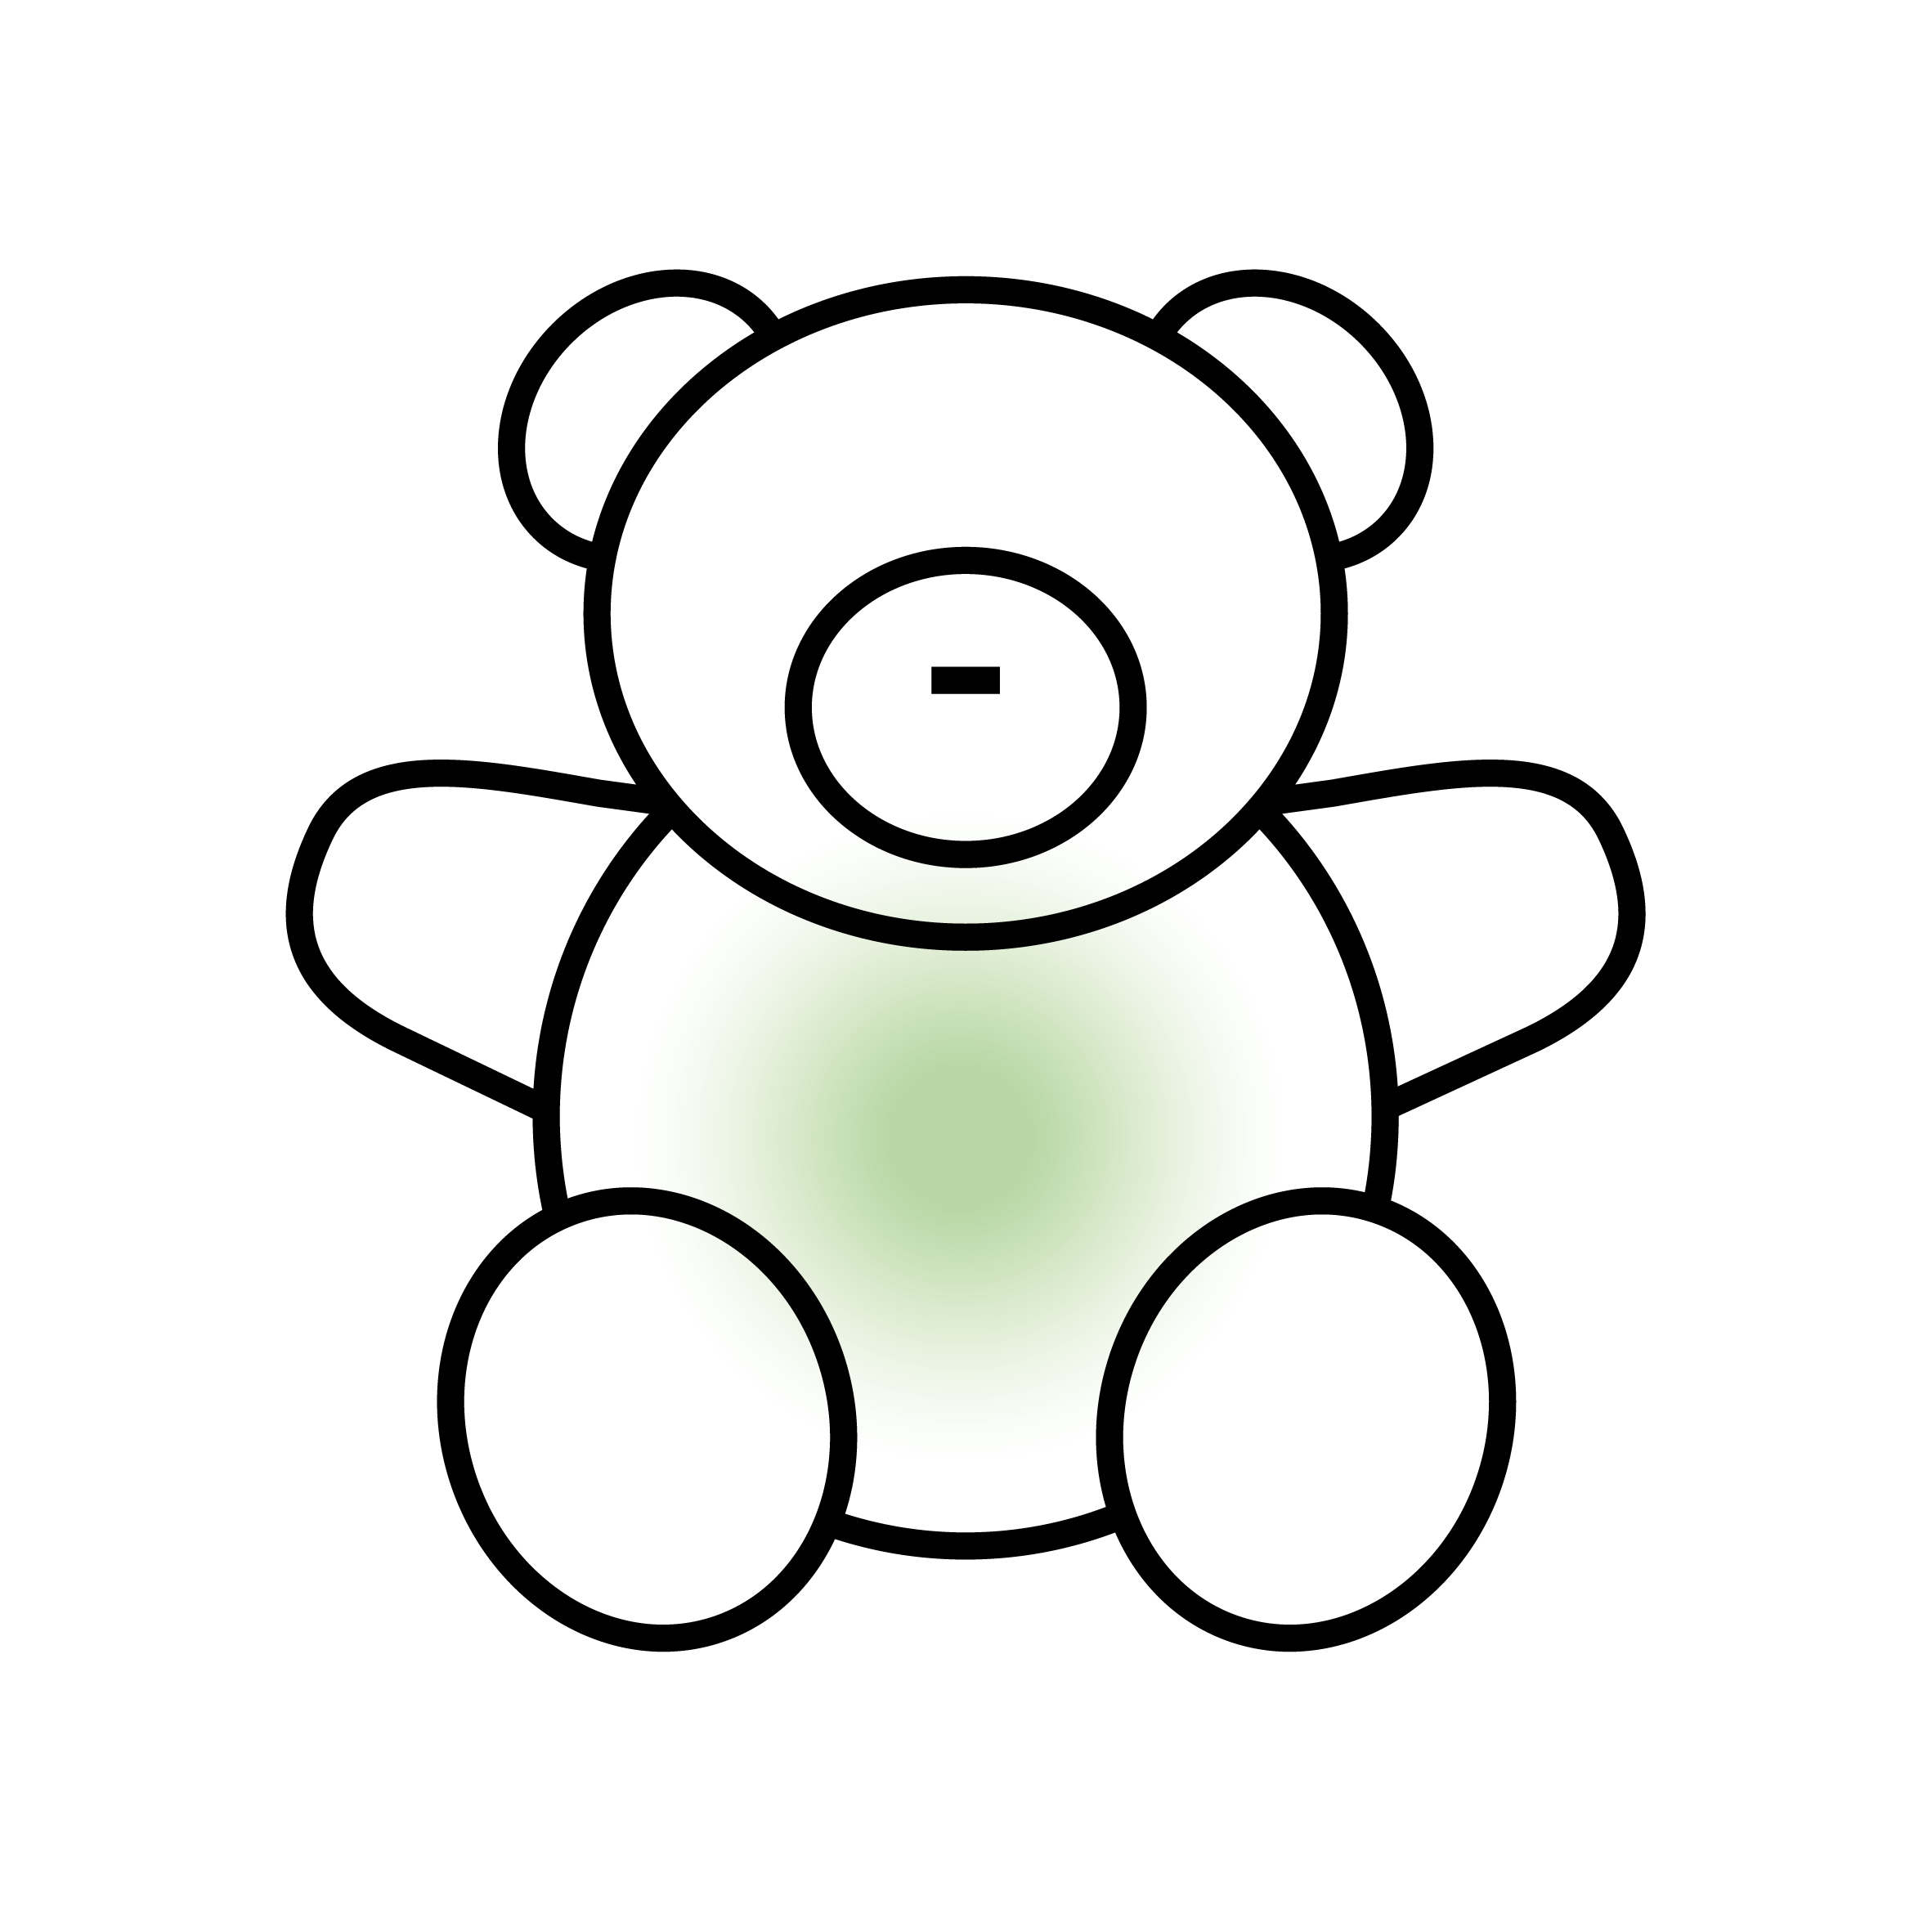 Illustration of a simple teddy bear.